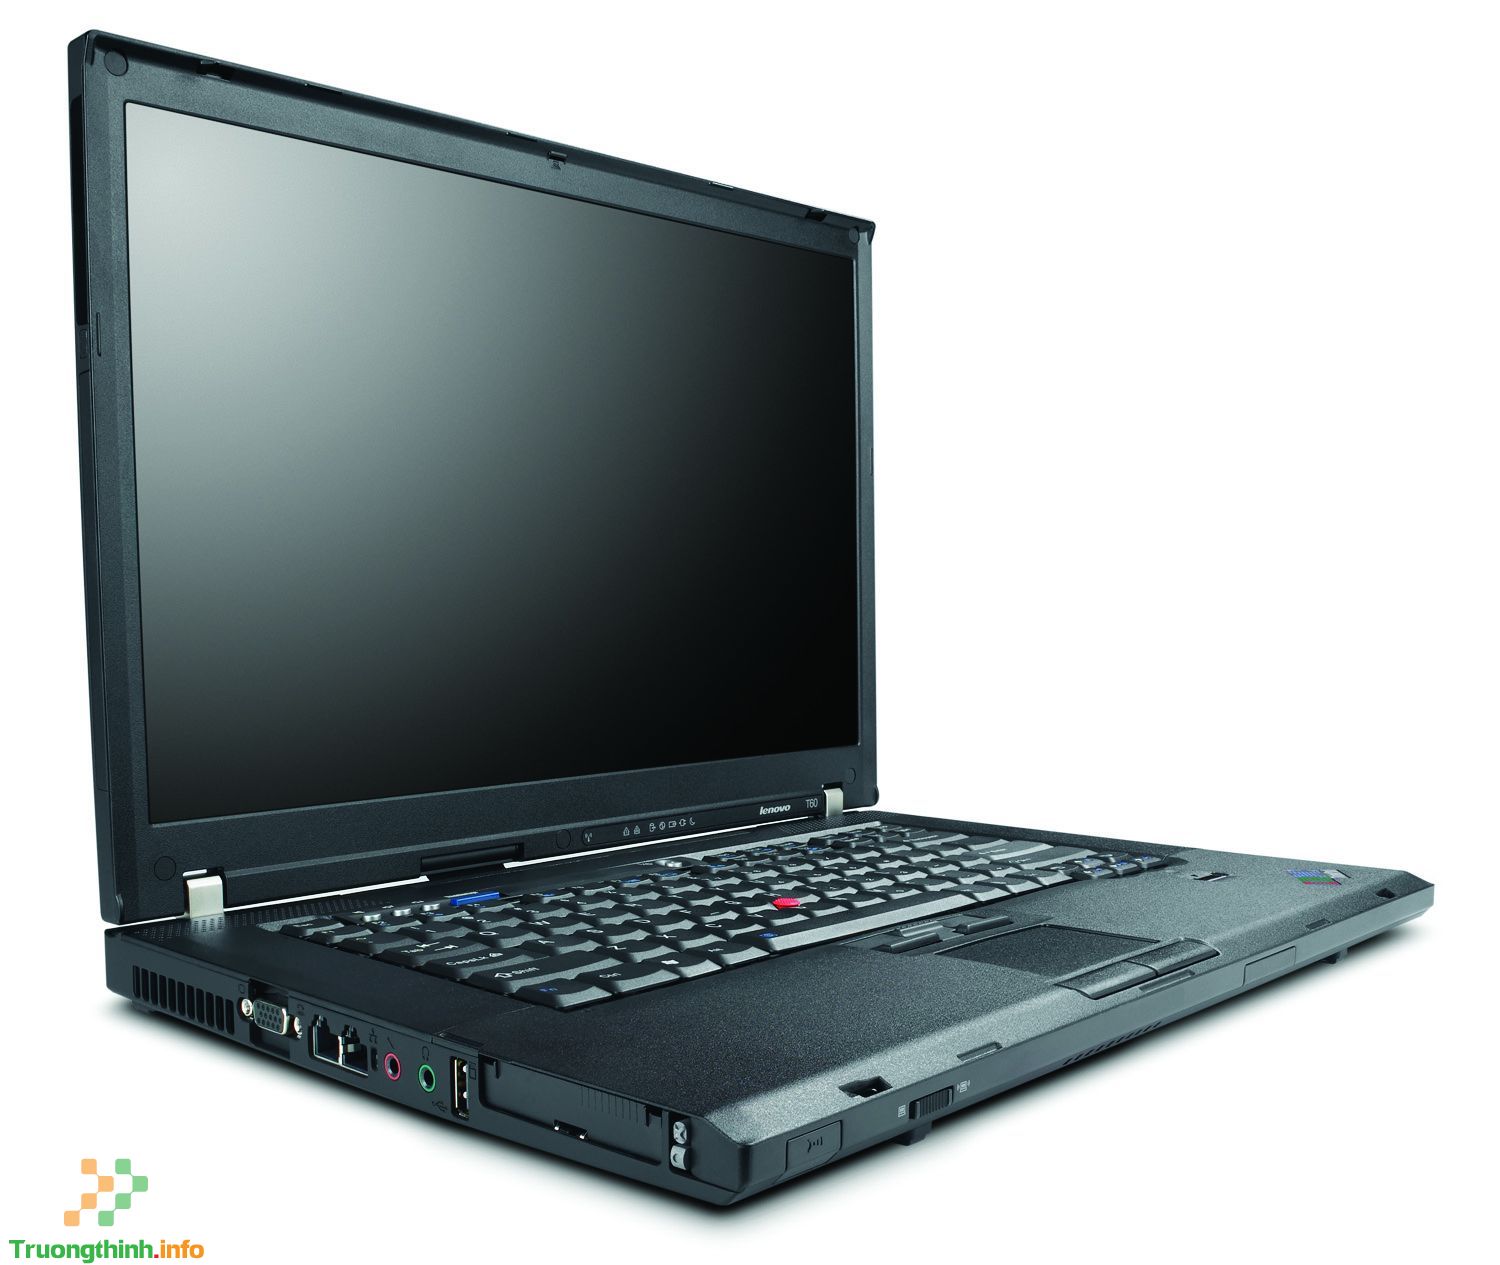 Thay sửa màn hình laptop Lenovo Thinkpad T60 Giá rẻ - Uy Tín